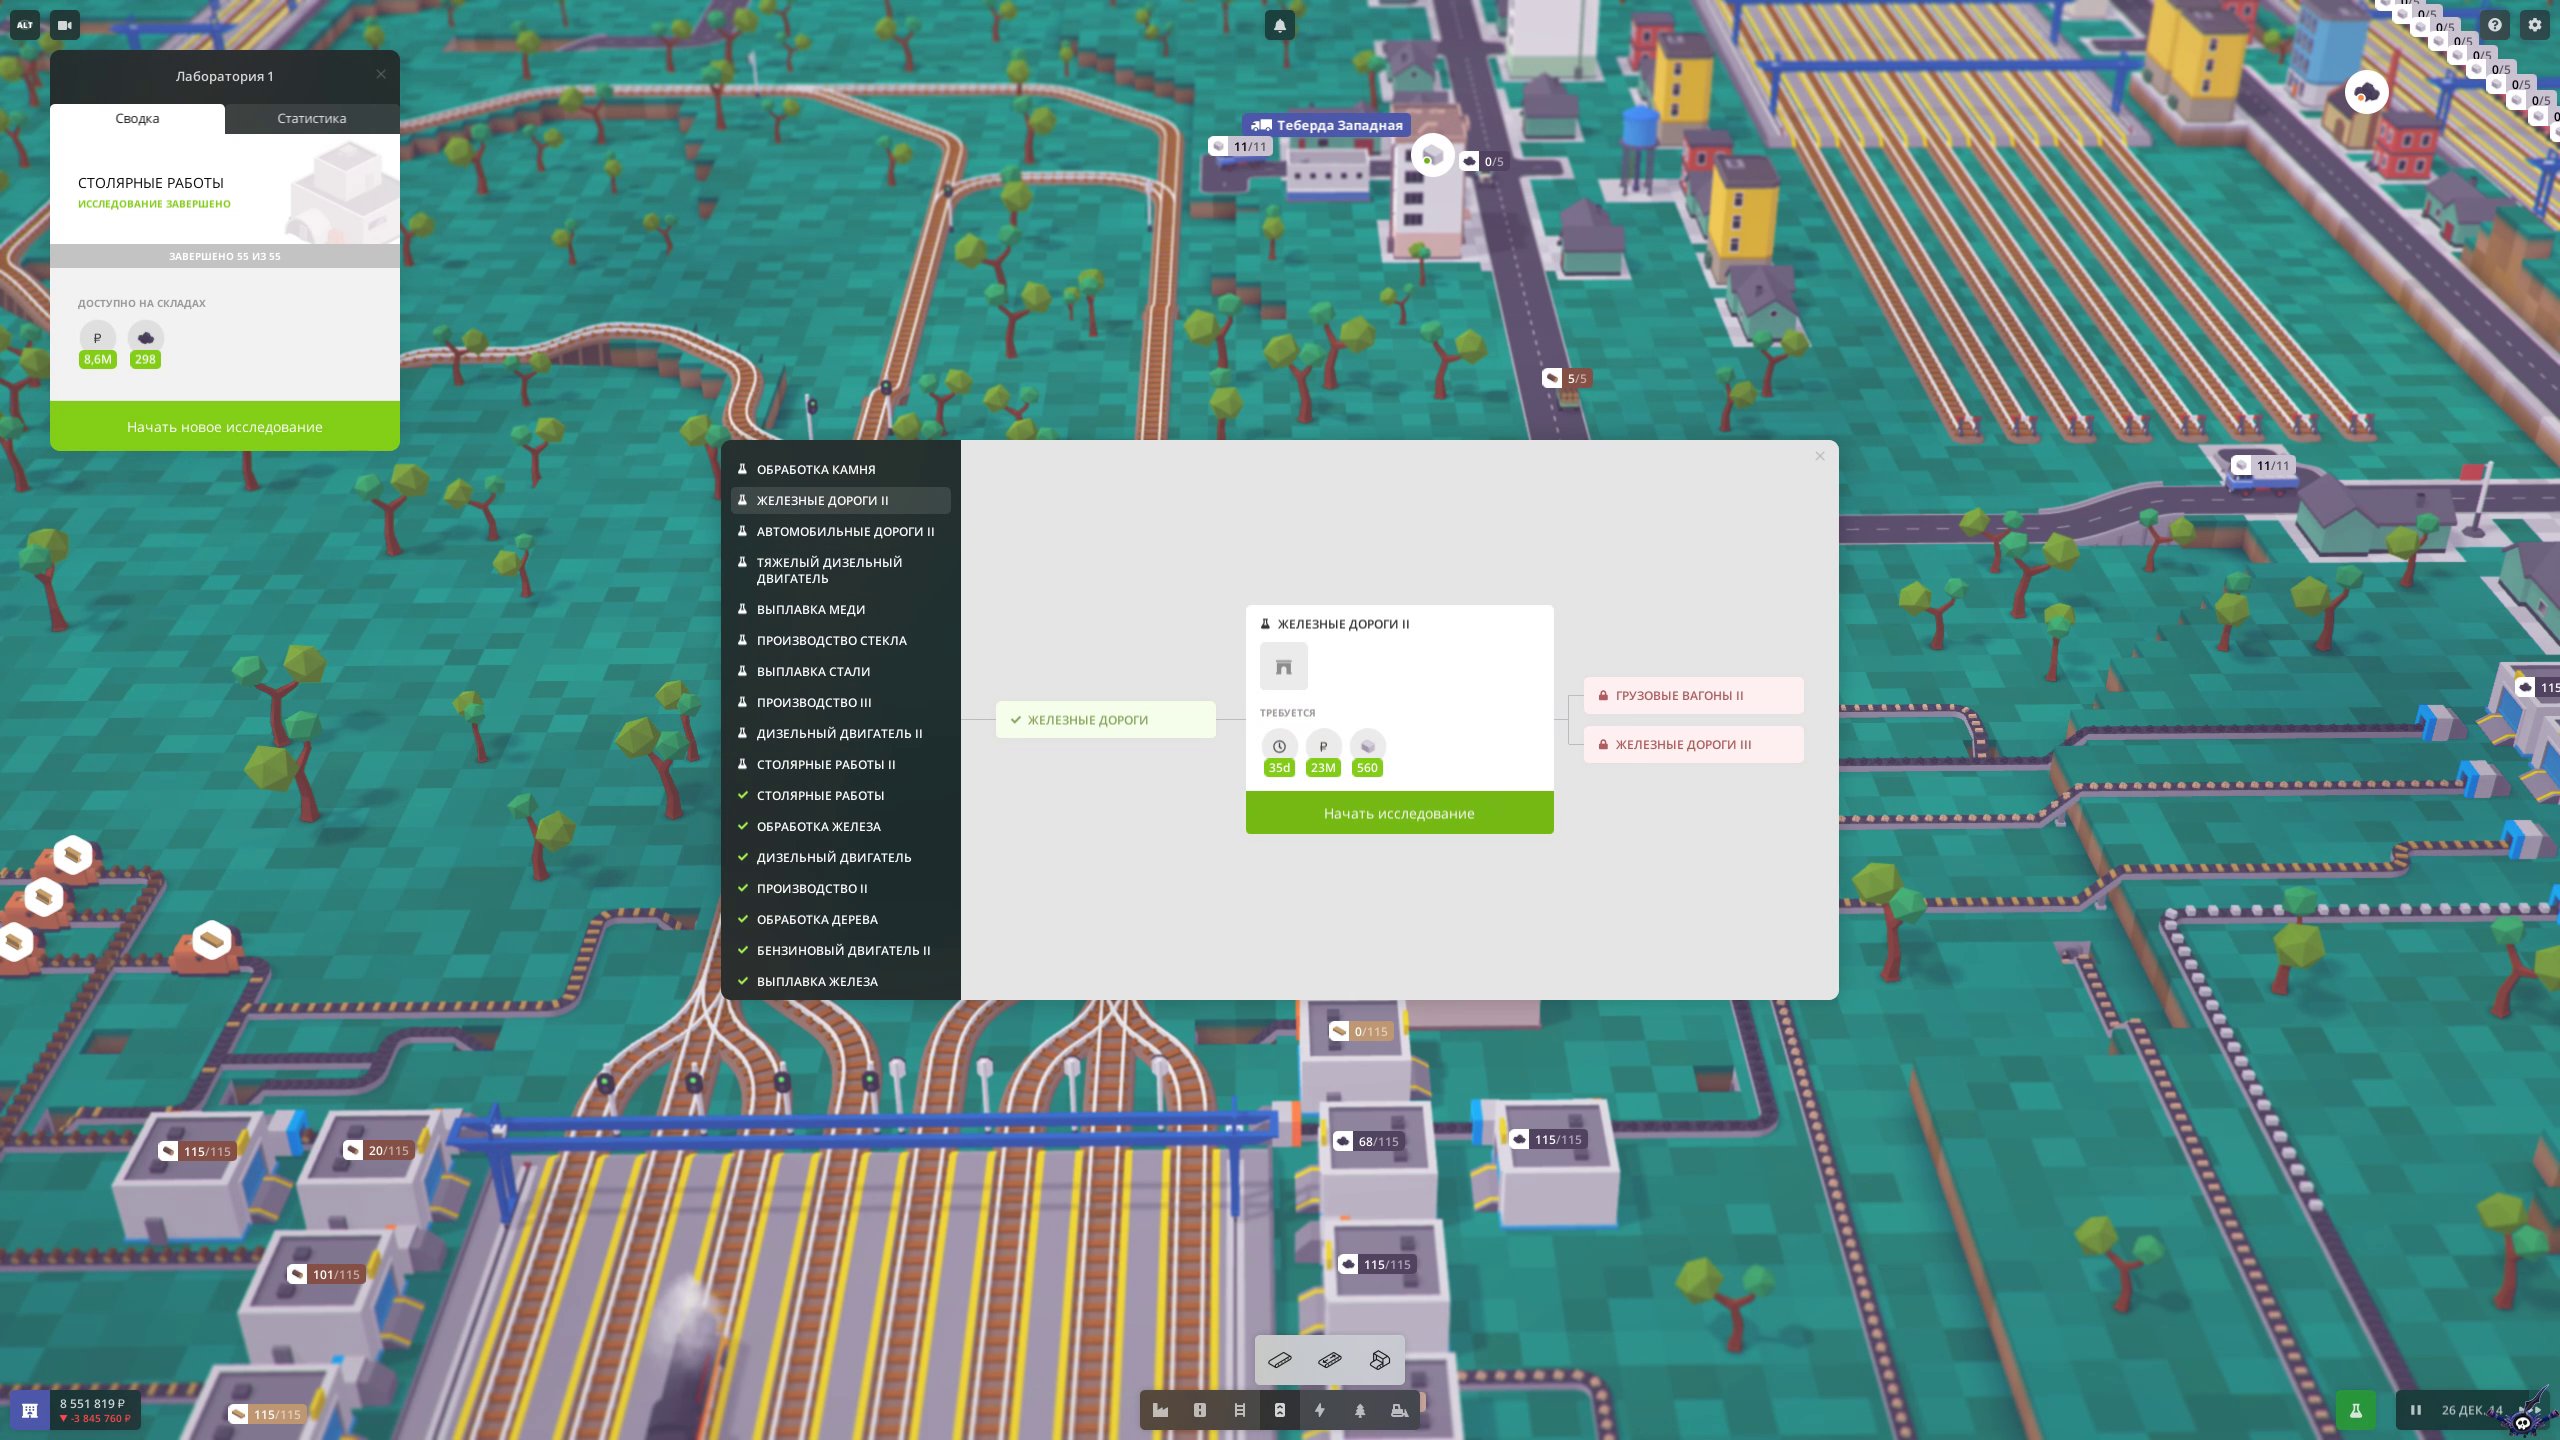 voxel-tycoon-screenshot